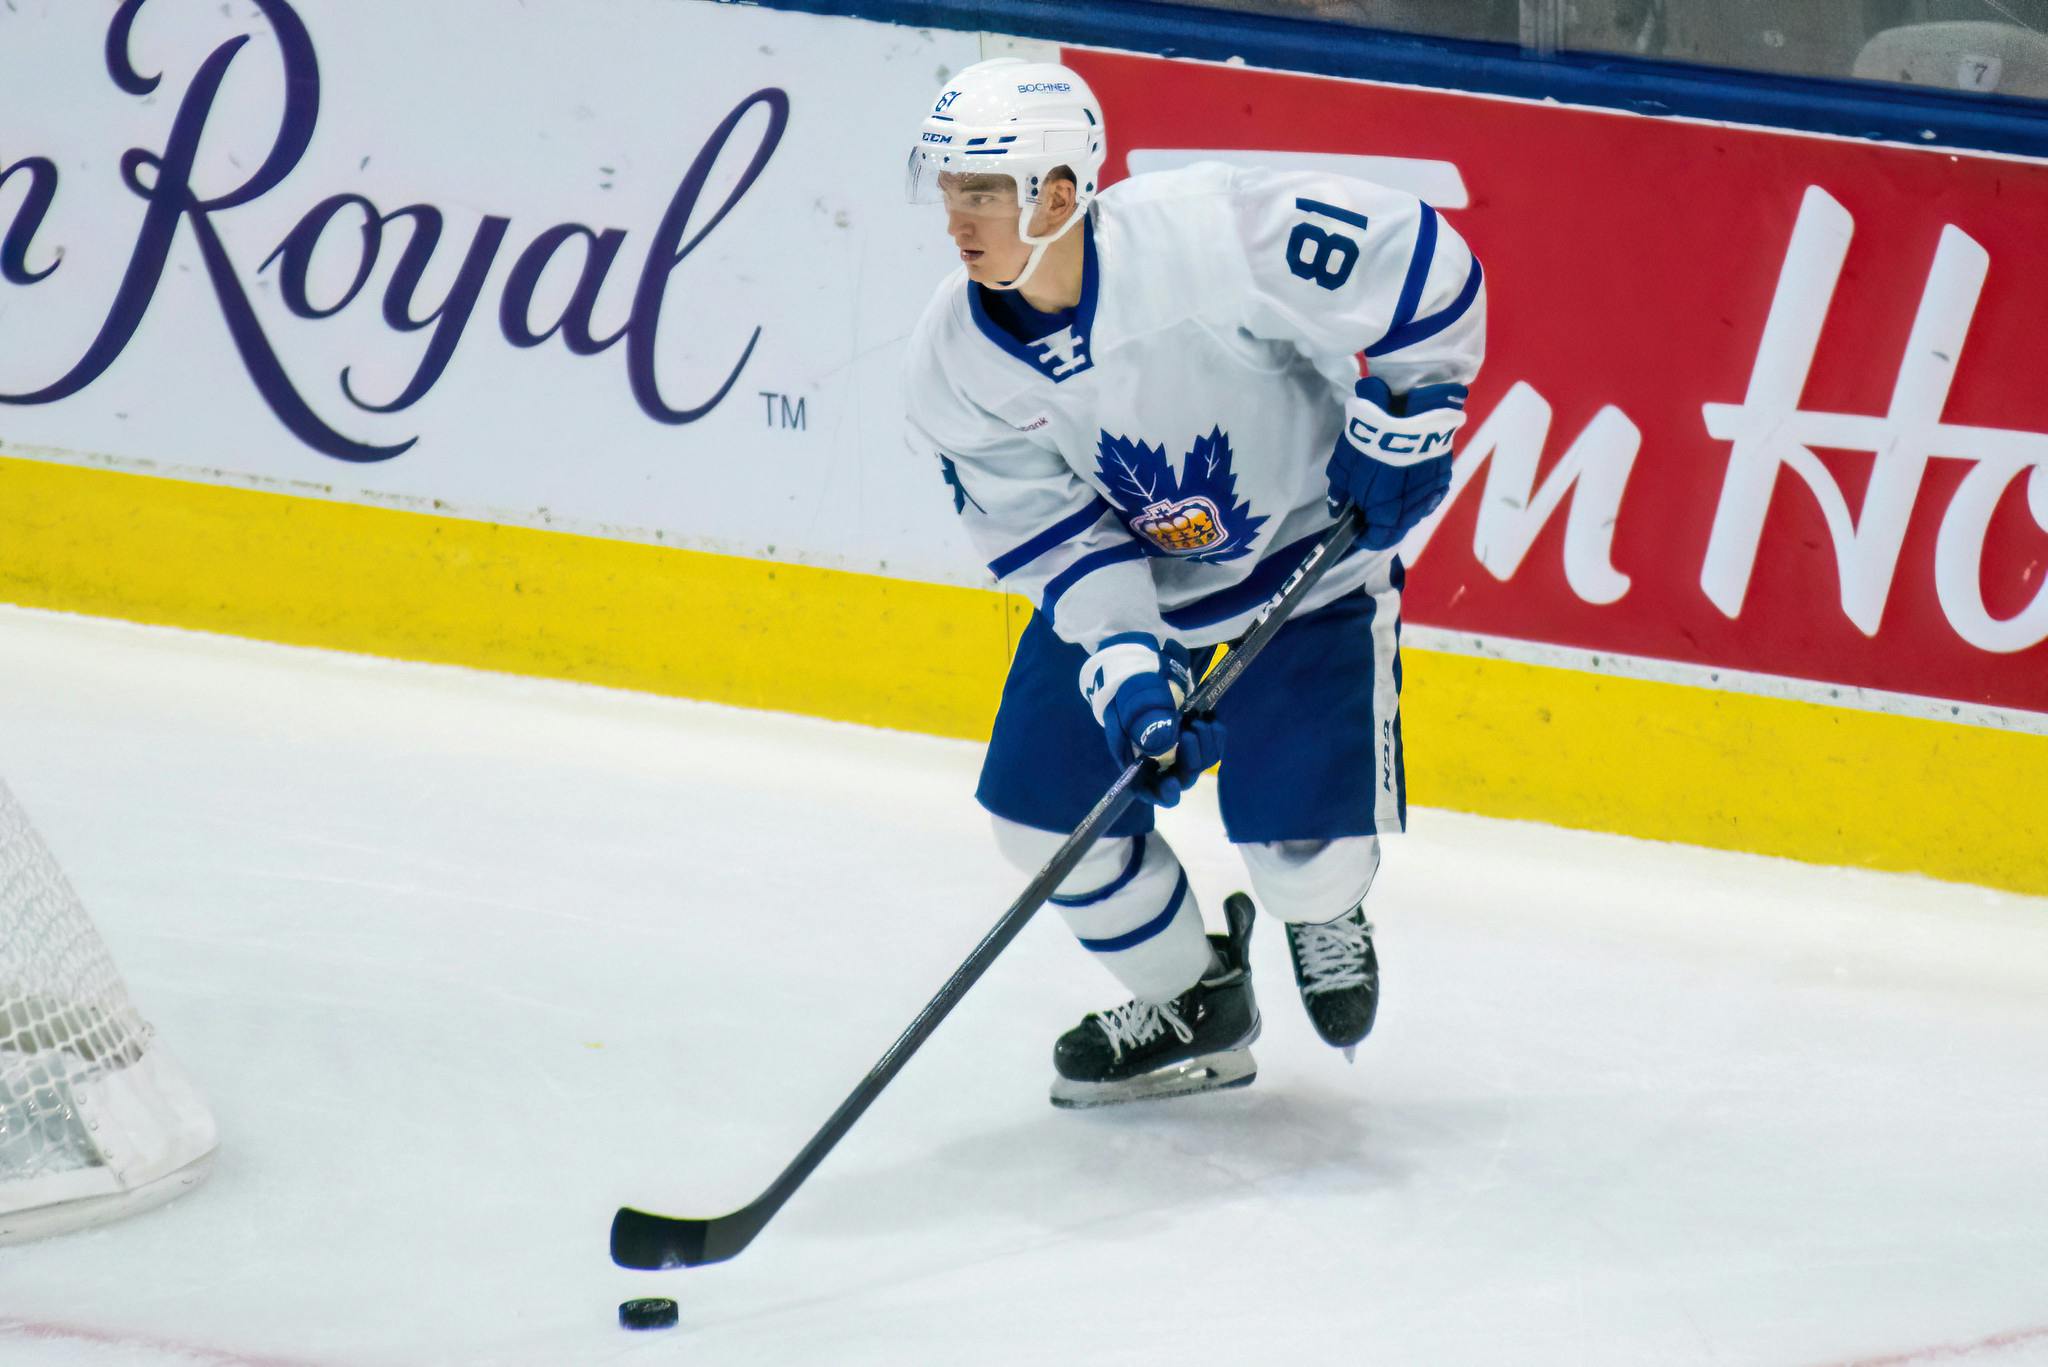 Jake Muzzin Jerseys  Jake Muzzin Toronto Maple Leafs Jerseys & Gear -  Leafs Store